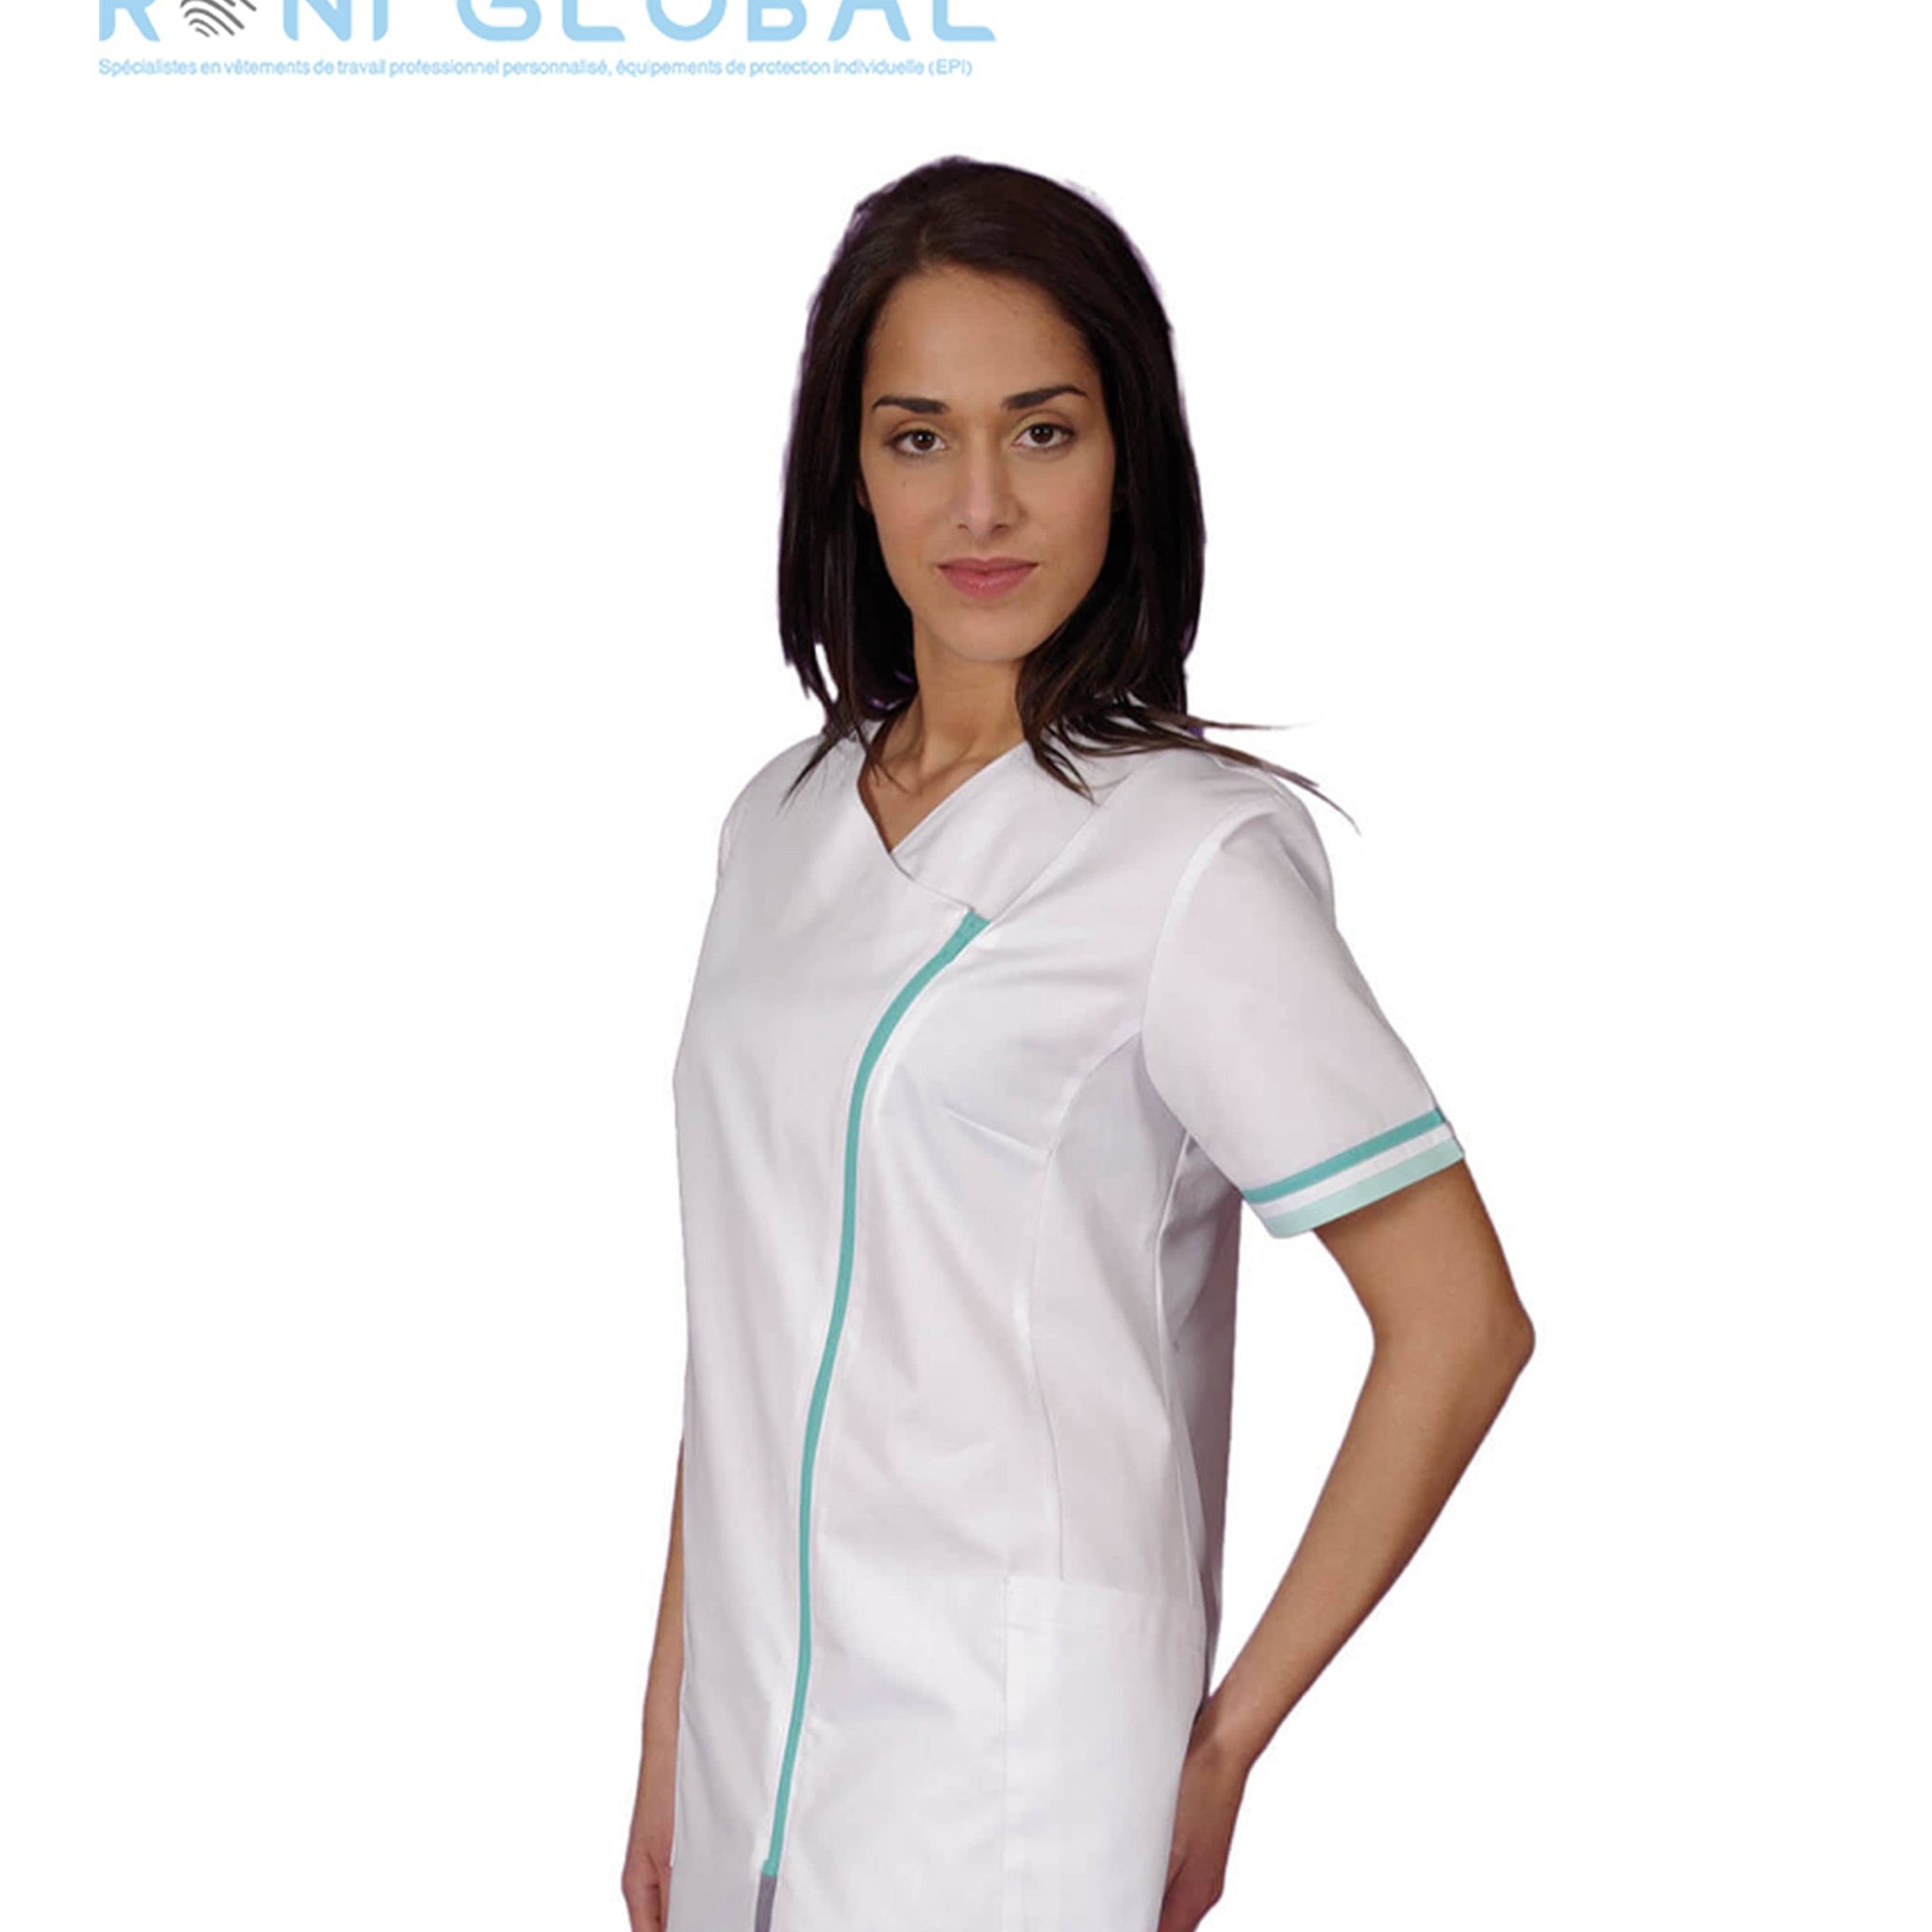 Tunique de travail médicale femme manches courtes en coton/polyester 2 poches - EMILIE REMI CONFECTION